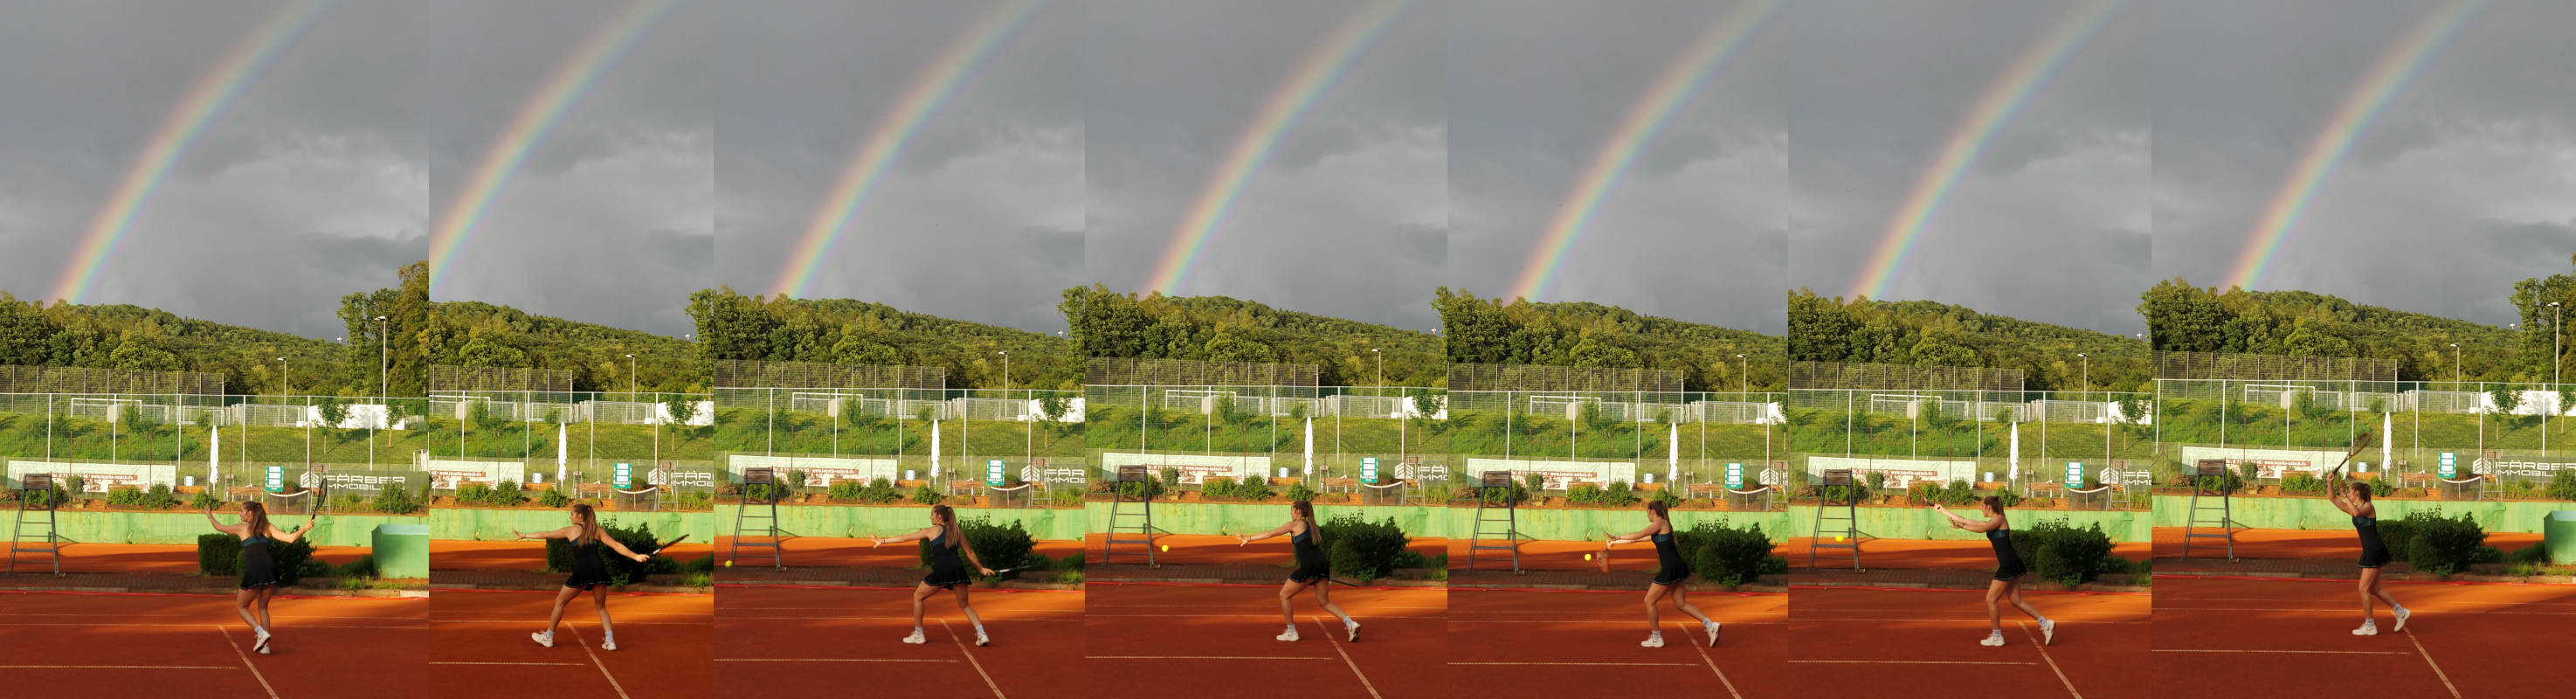 Tennis und Regenbogen